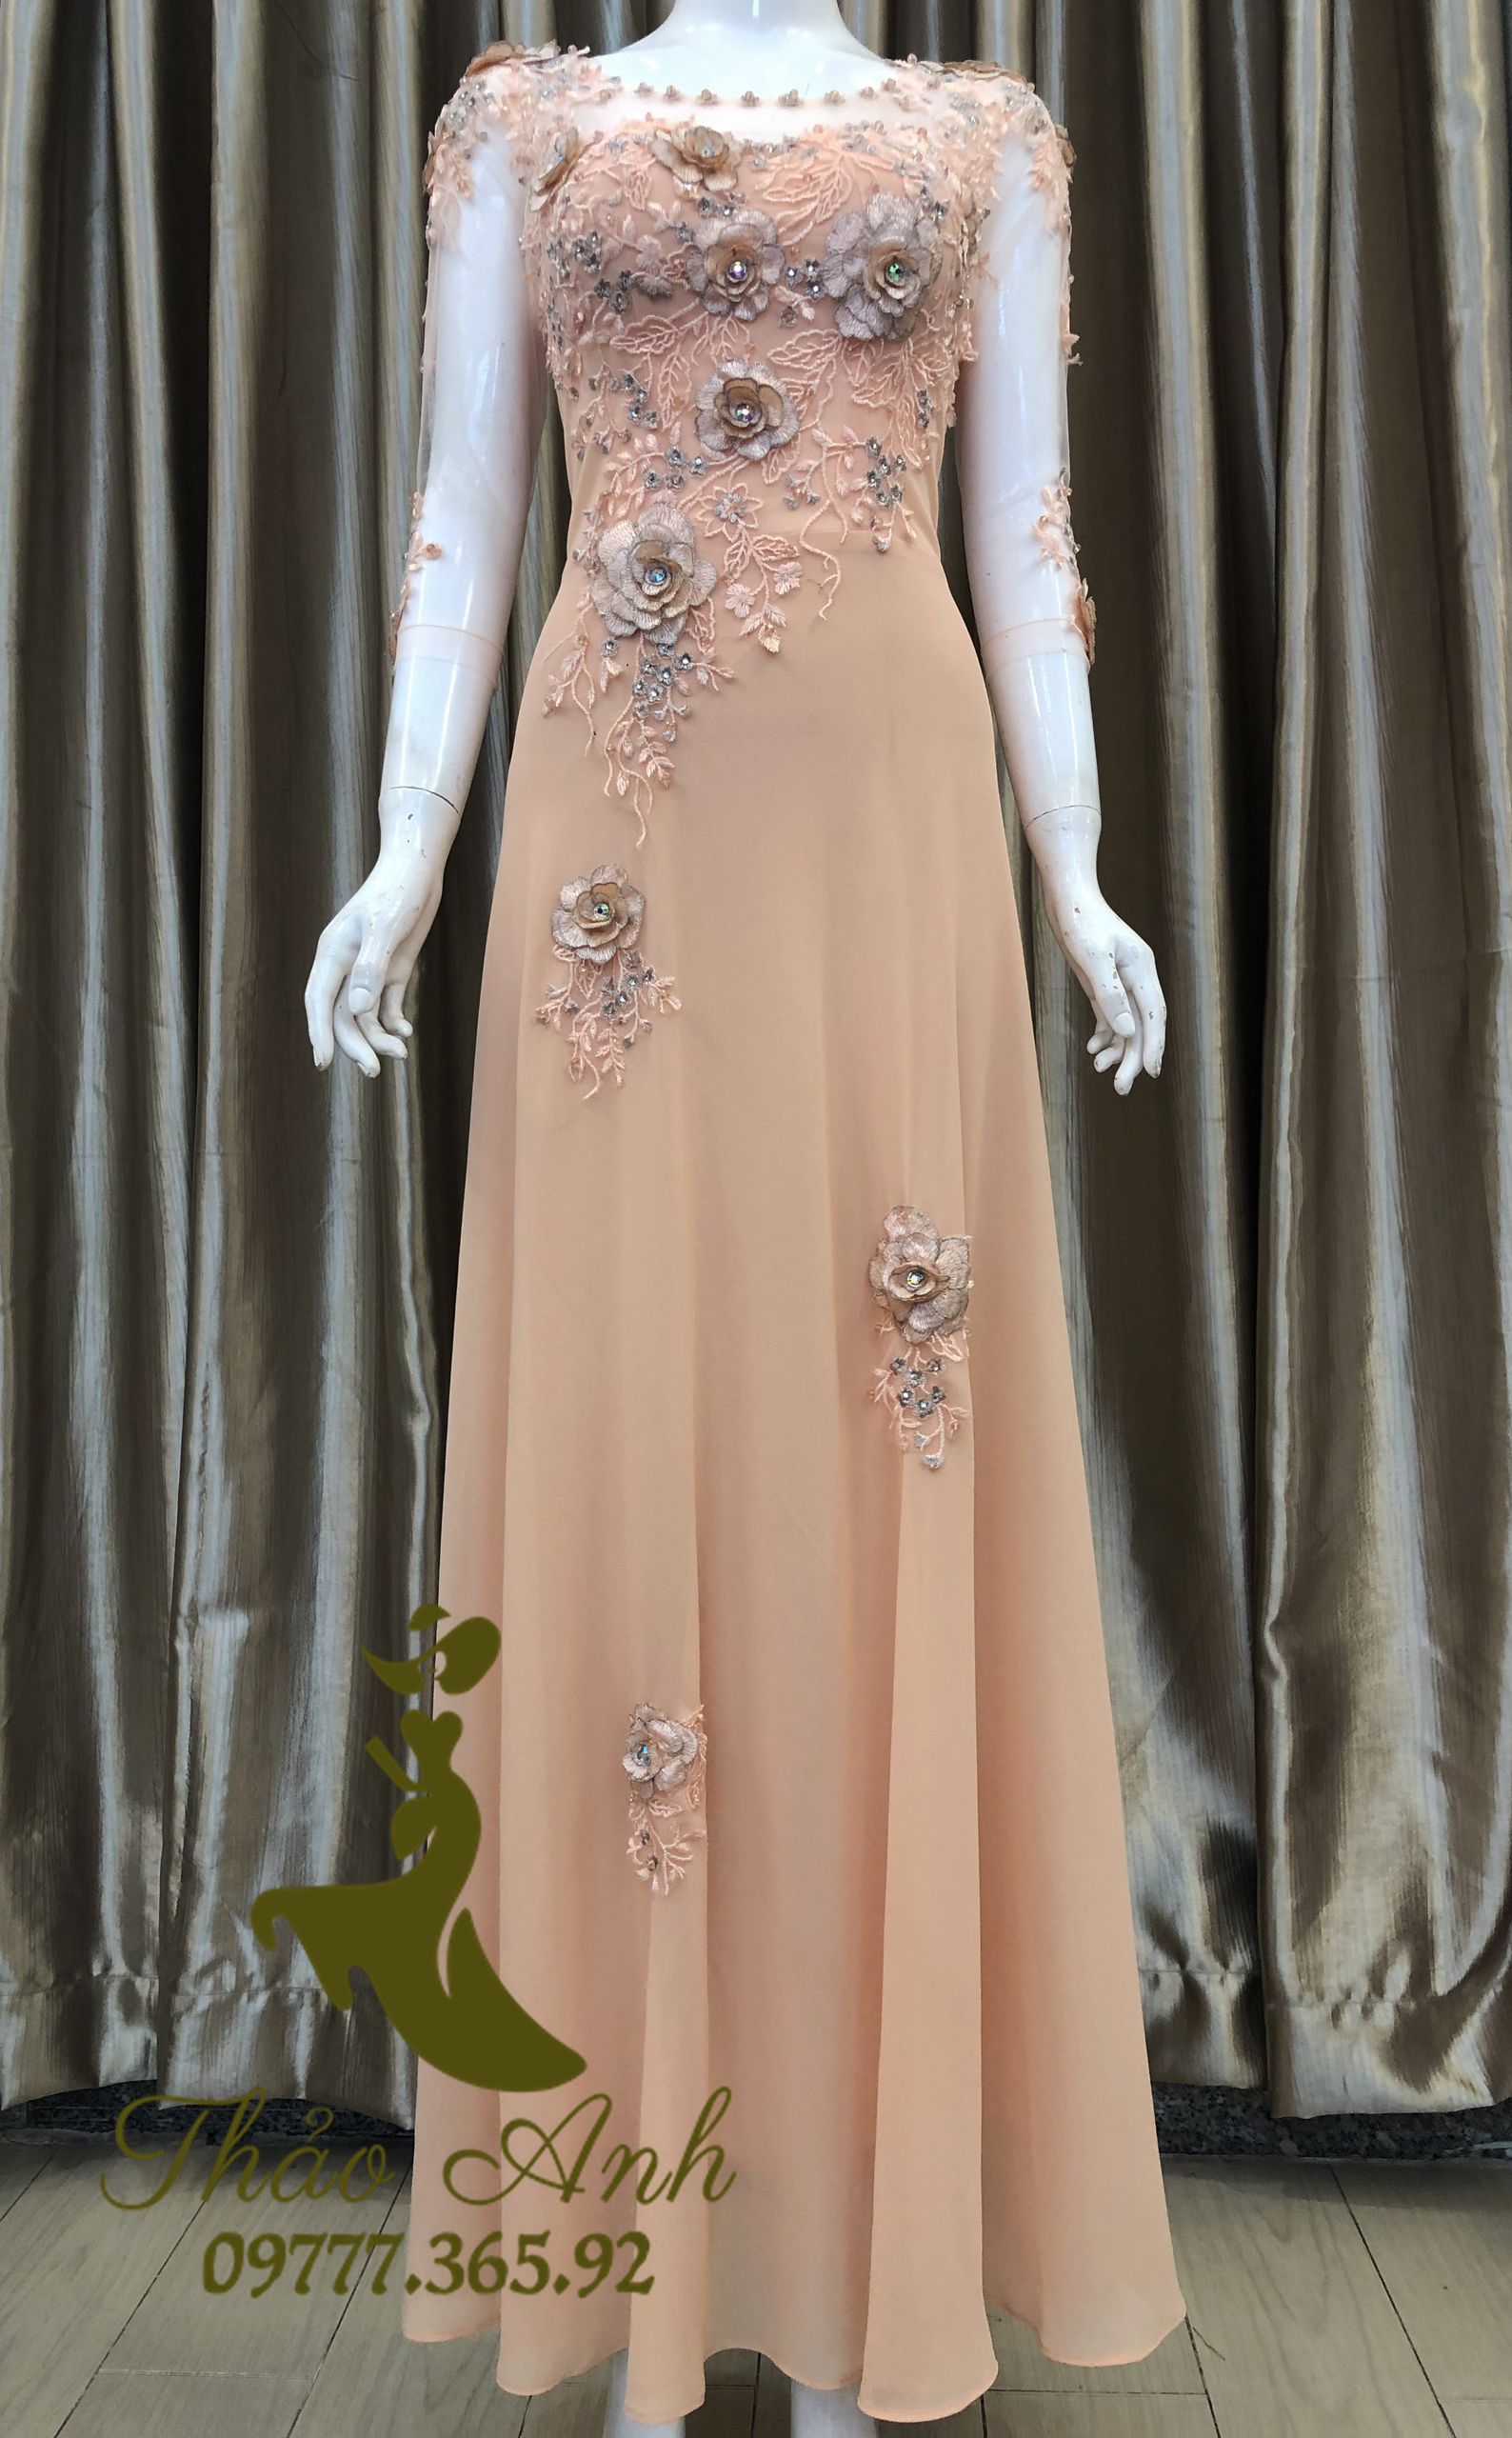 váy nữ | Lazada.vn: Mua bán trực tuyến Đầm với giá rẻ | Lazada.vn